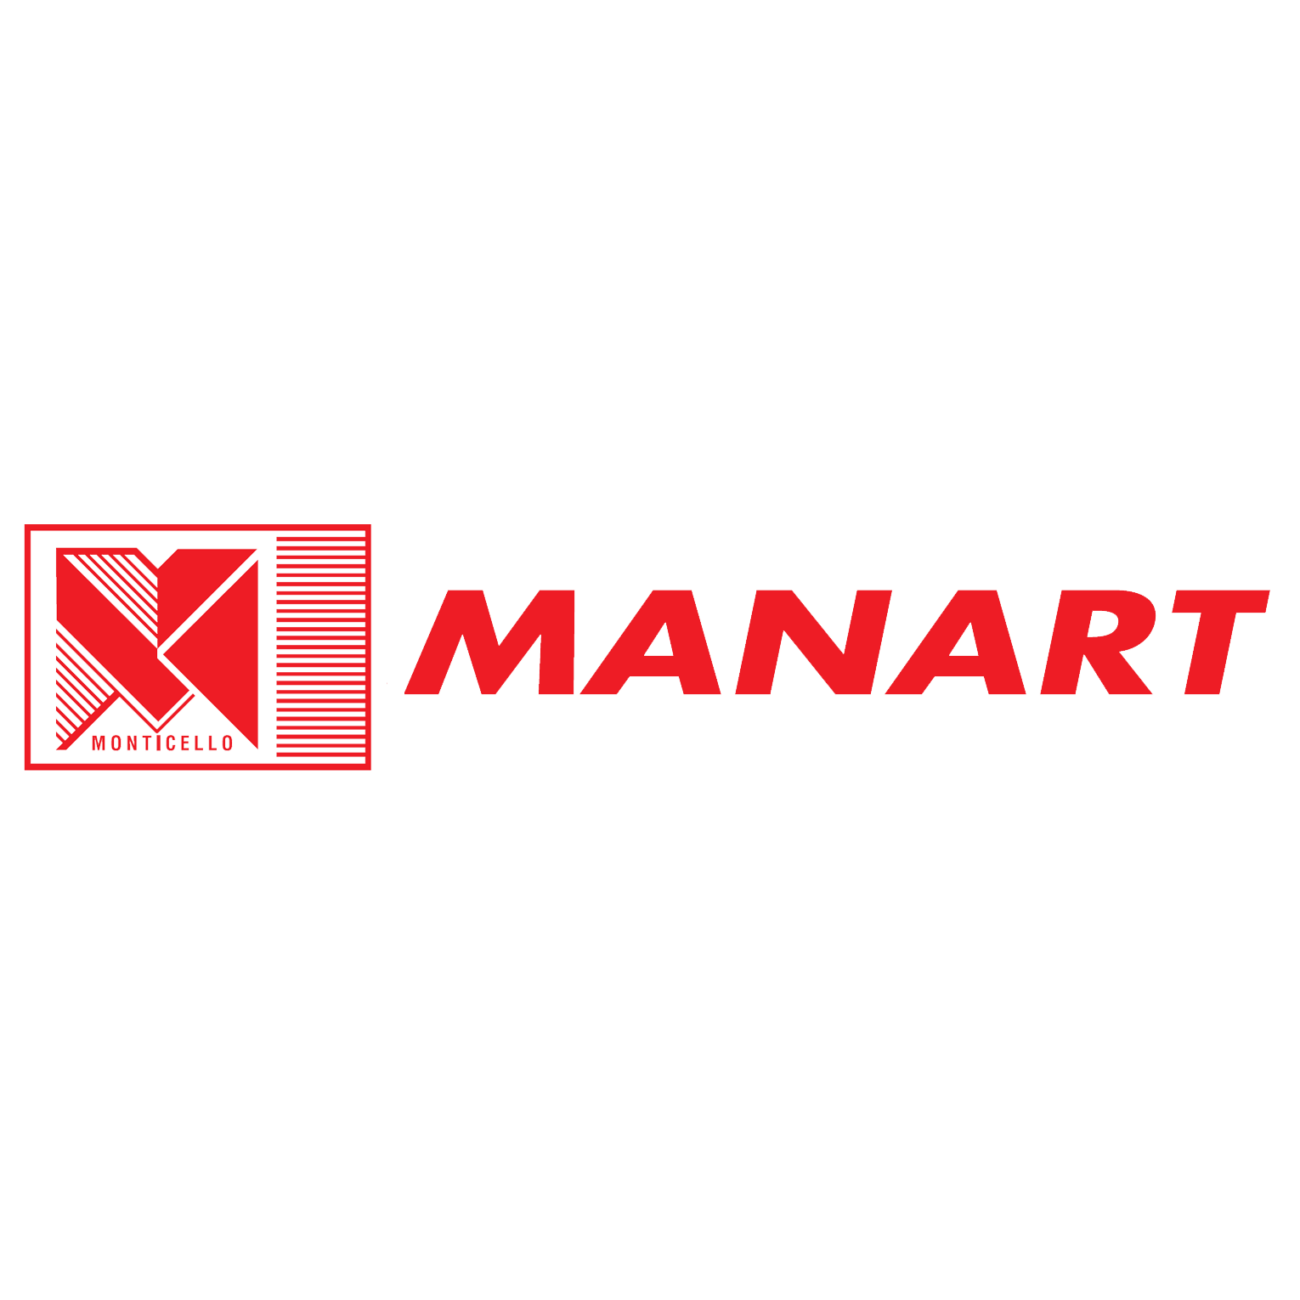 MANART